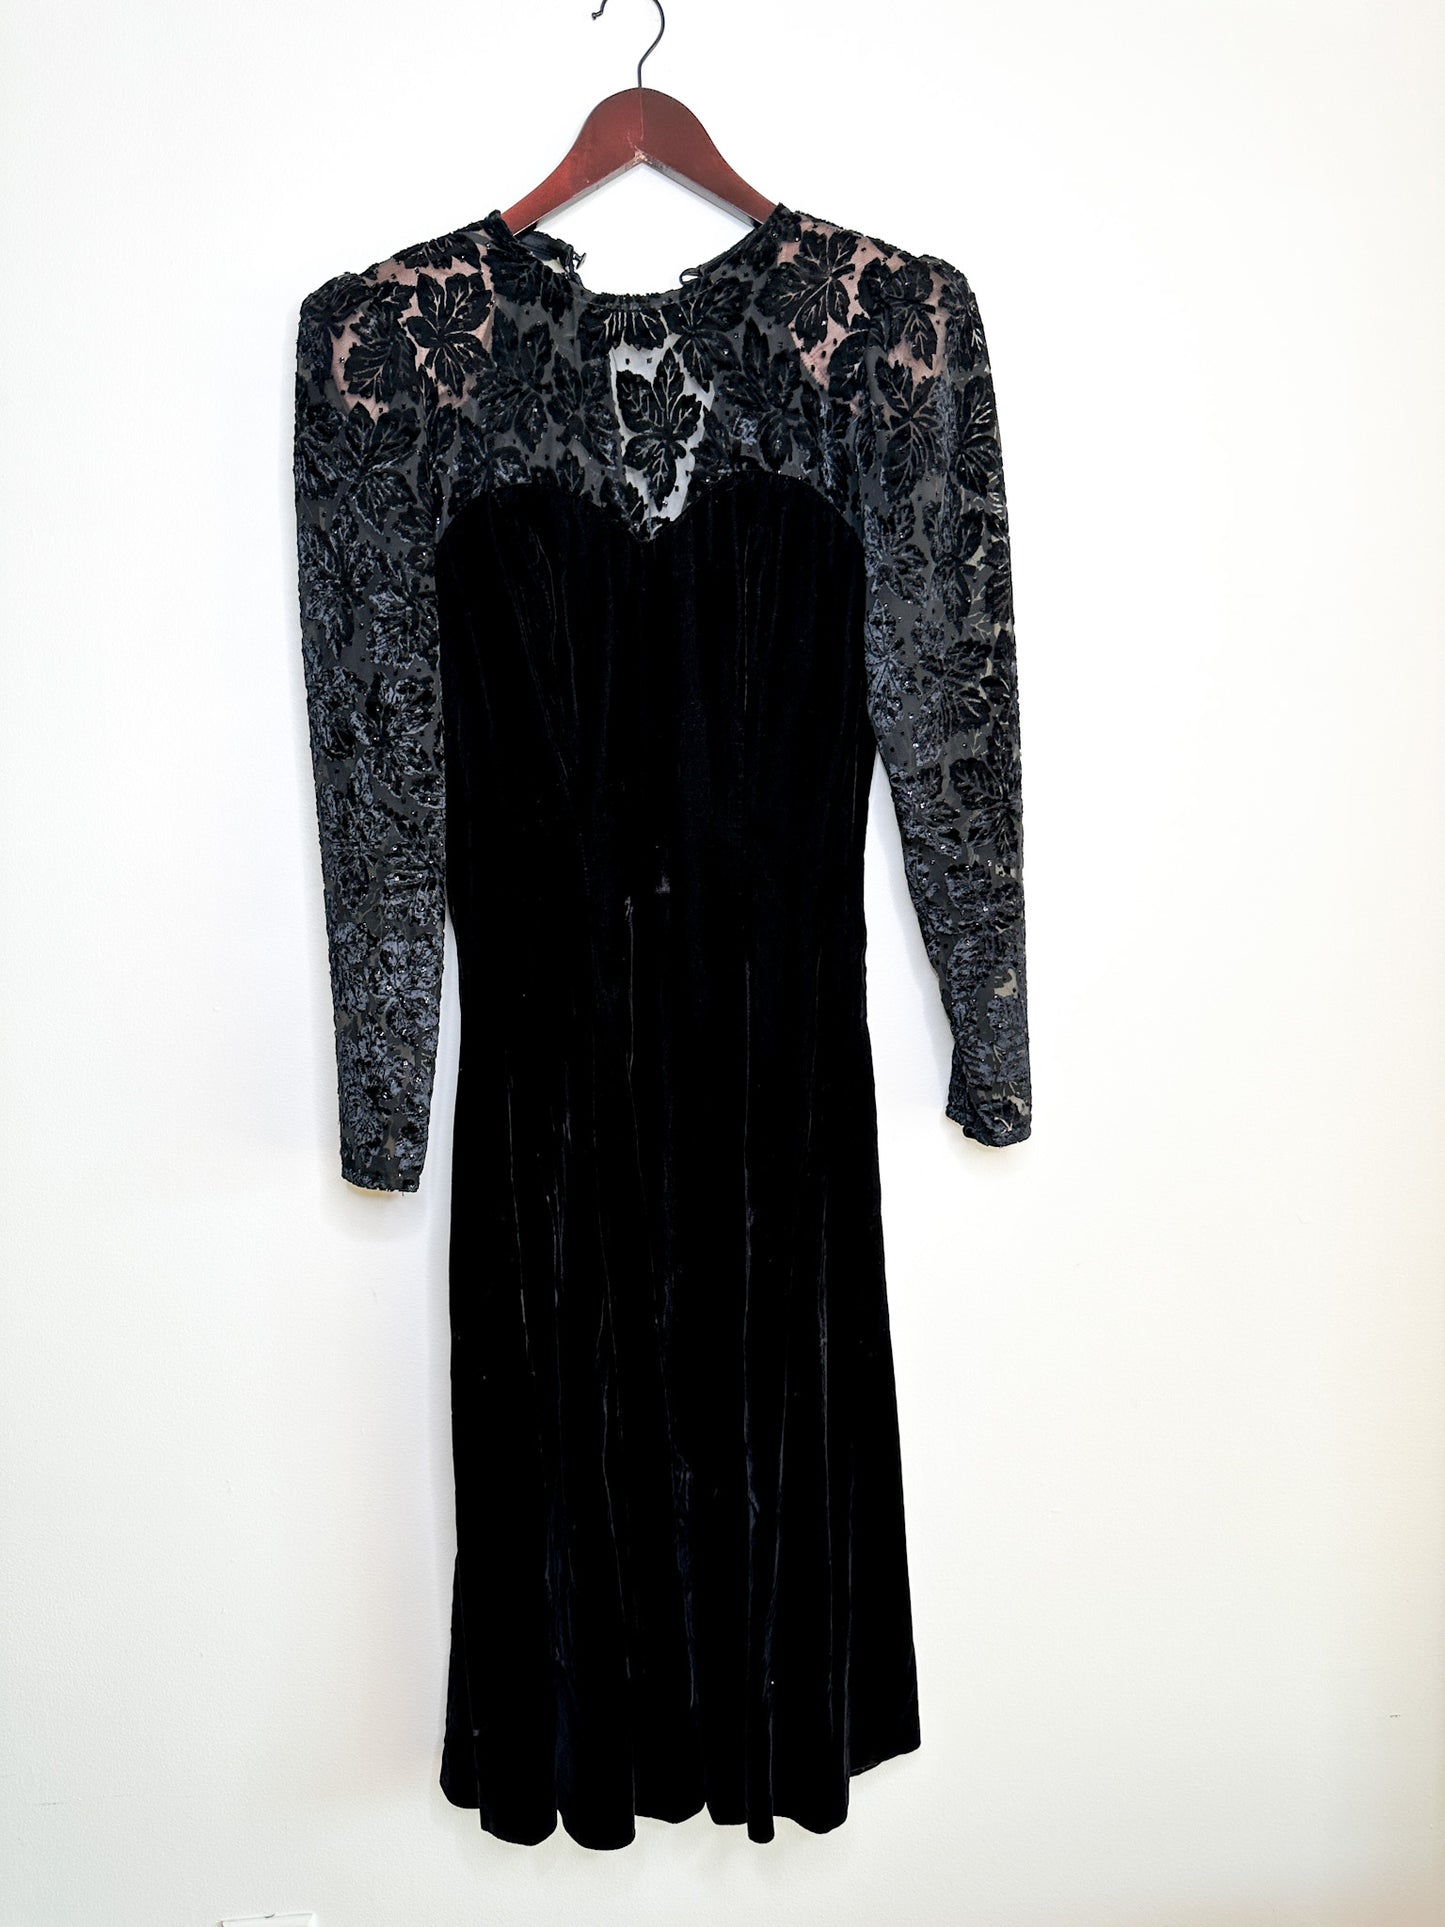 Orite Black Suede Cocktail Dress with Sheer Neckline Detail | Vintage Orite Dress | Little Black Dress |NYT DRESS| Size: 5/6 (S)